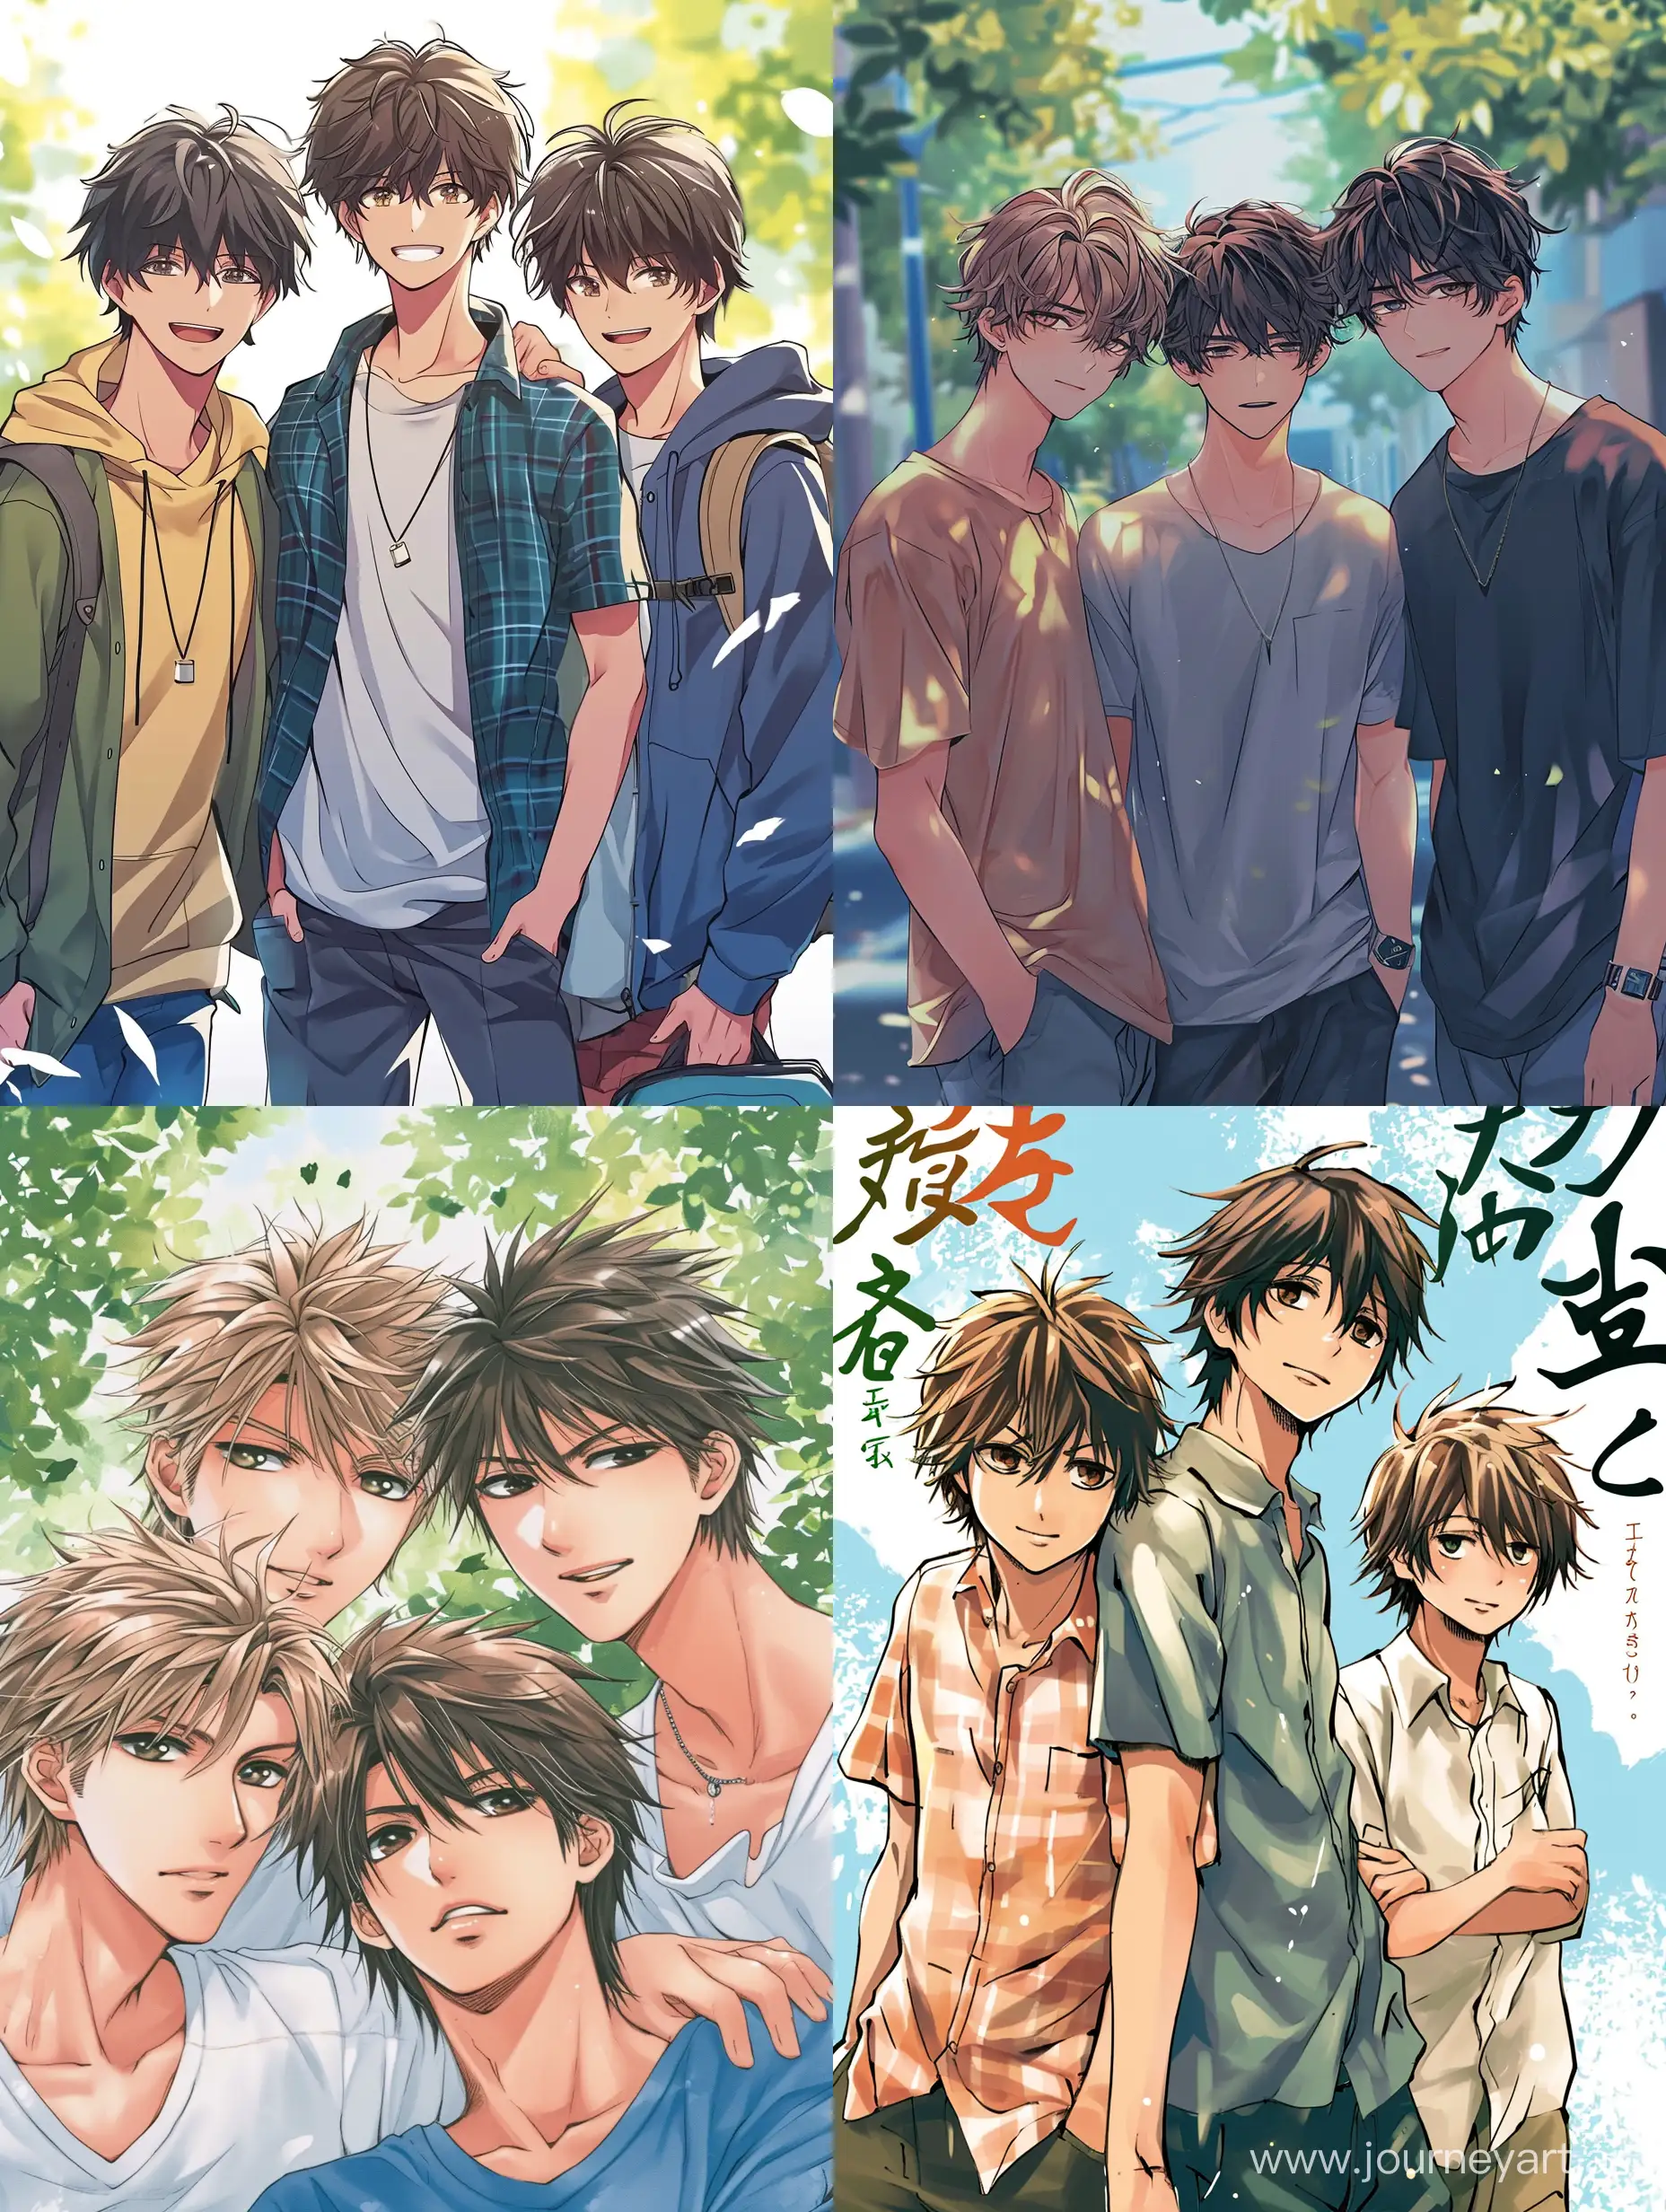 Anime-Friendship-of-Three-Boys-Light-Novel-Cover-Art